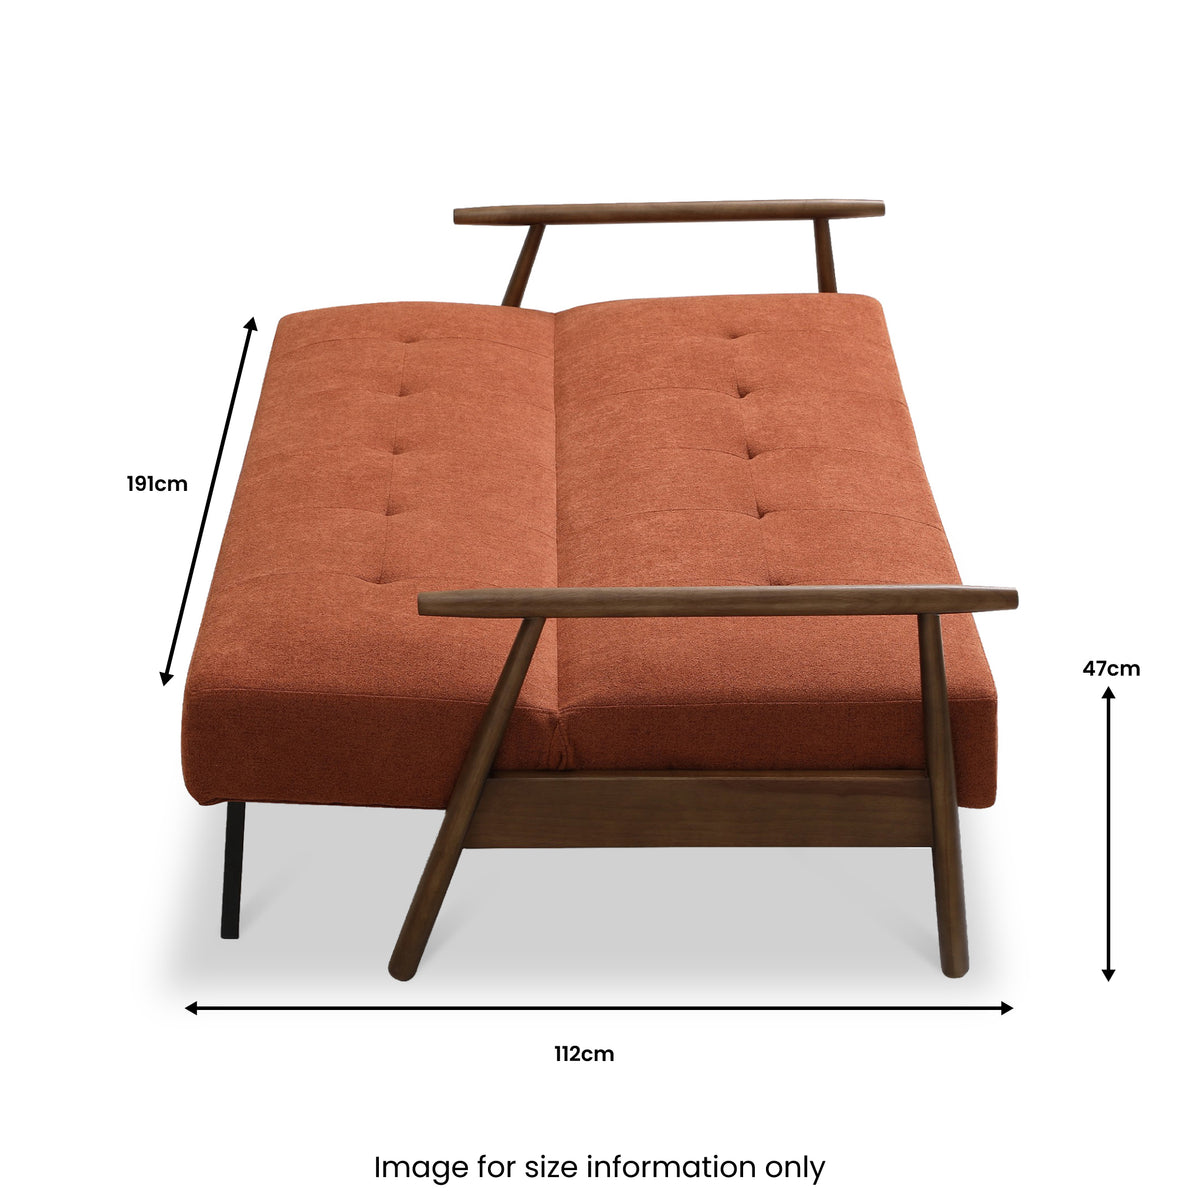 Coxley Sofa Bed Dimensions 